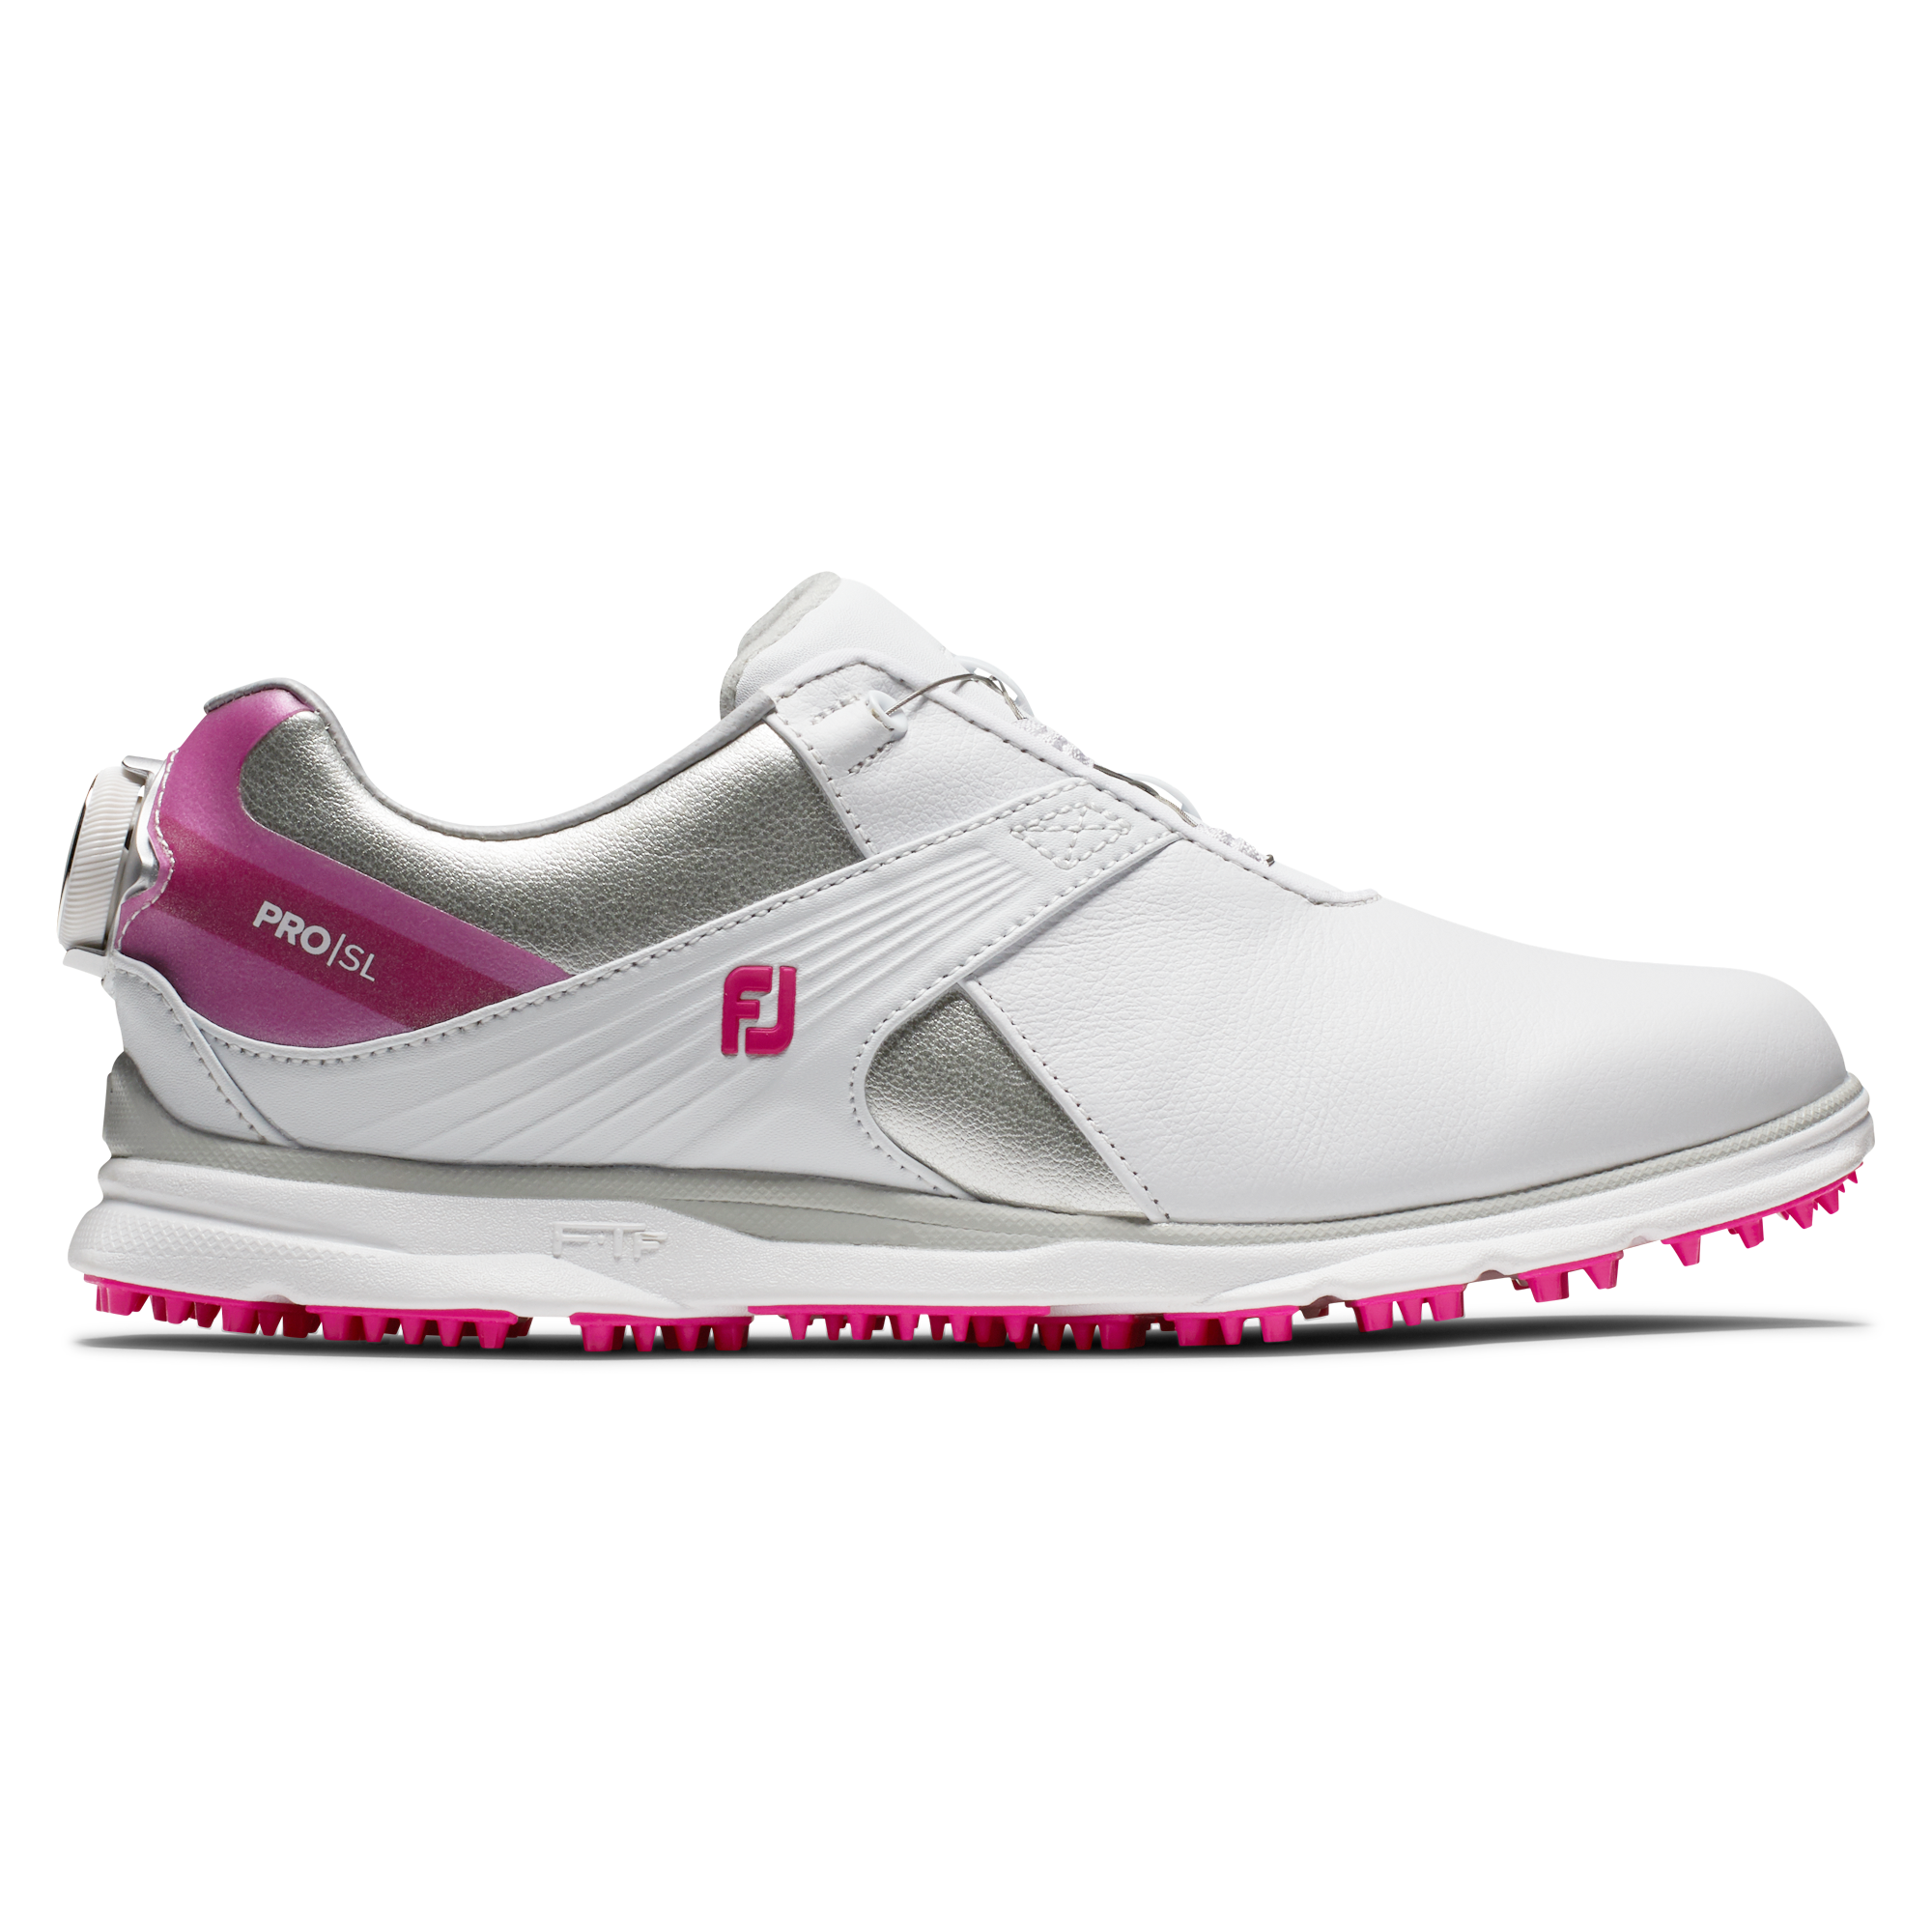 unique womens golf shoes